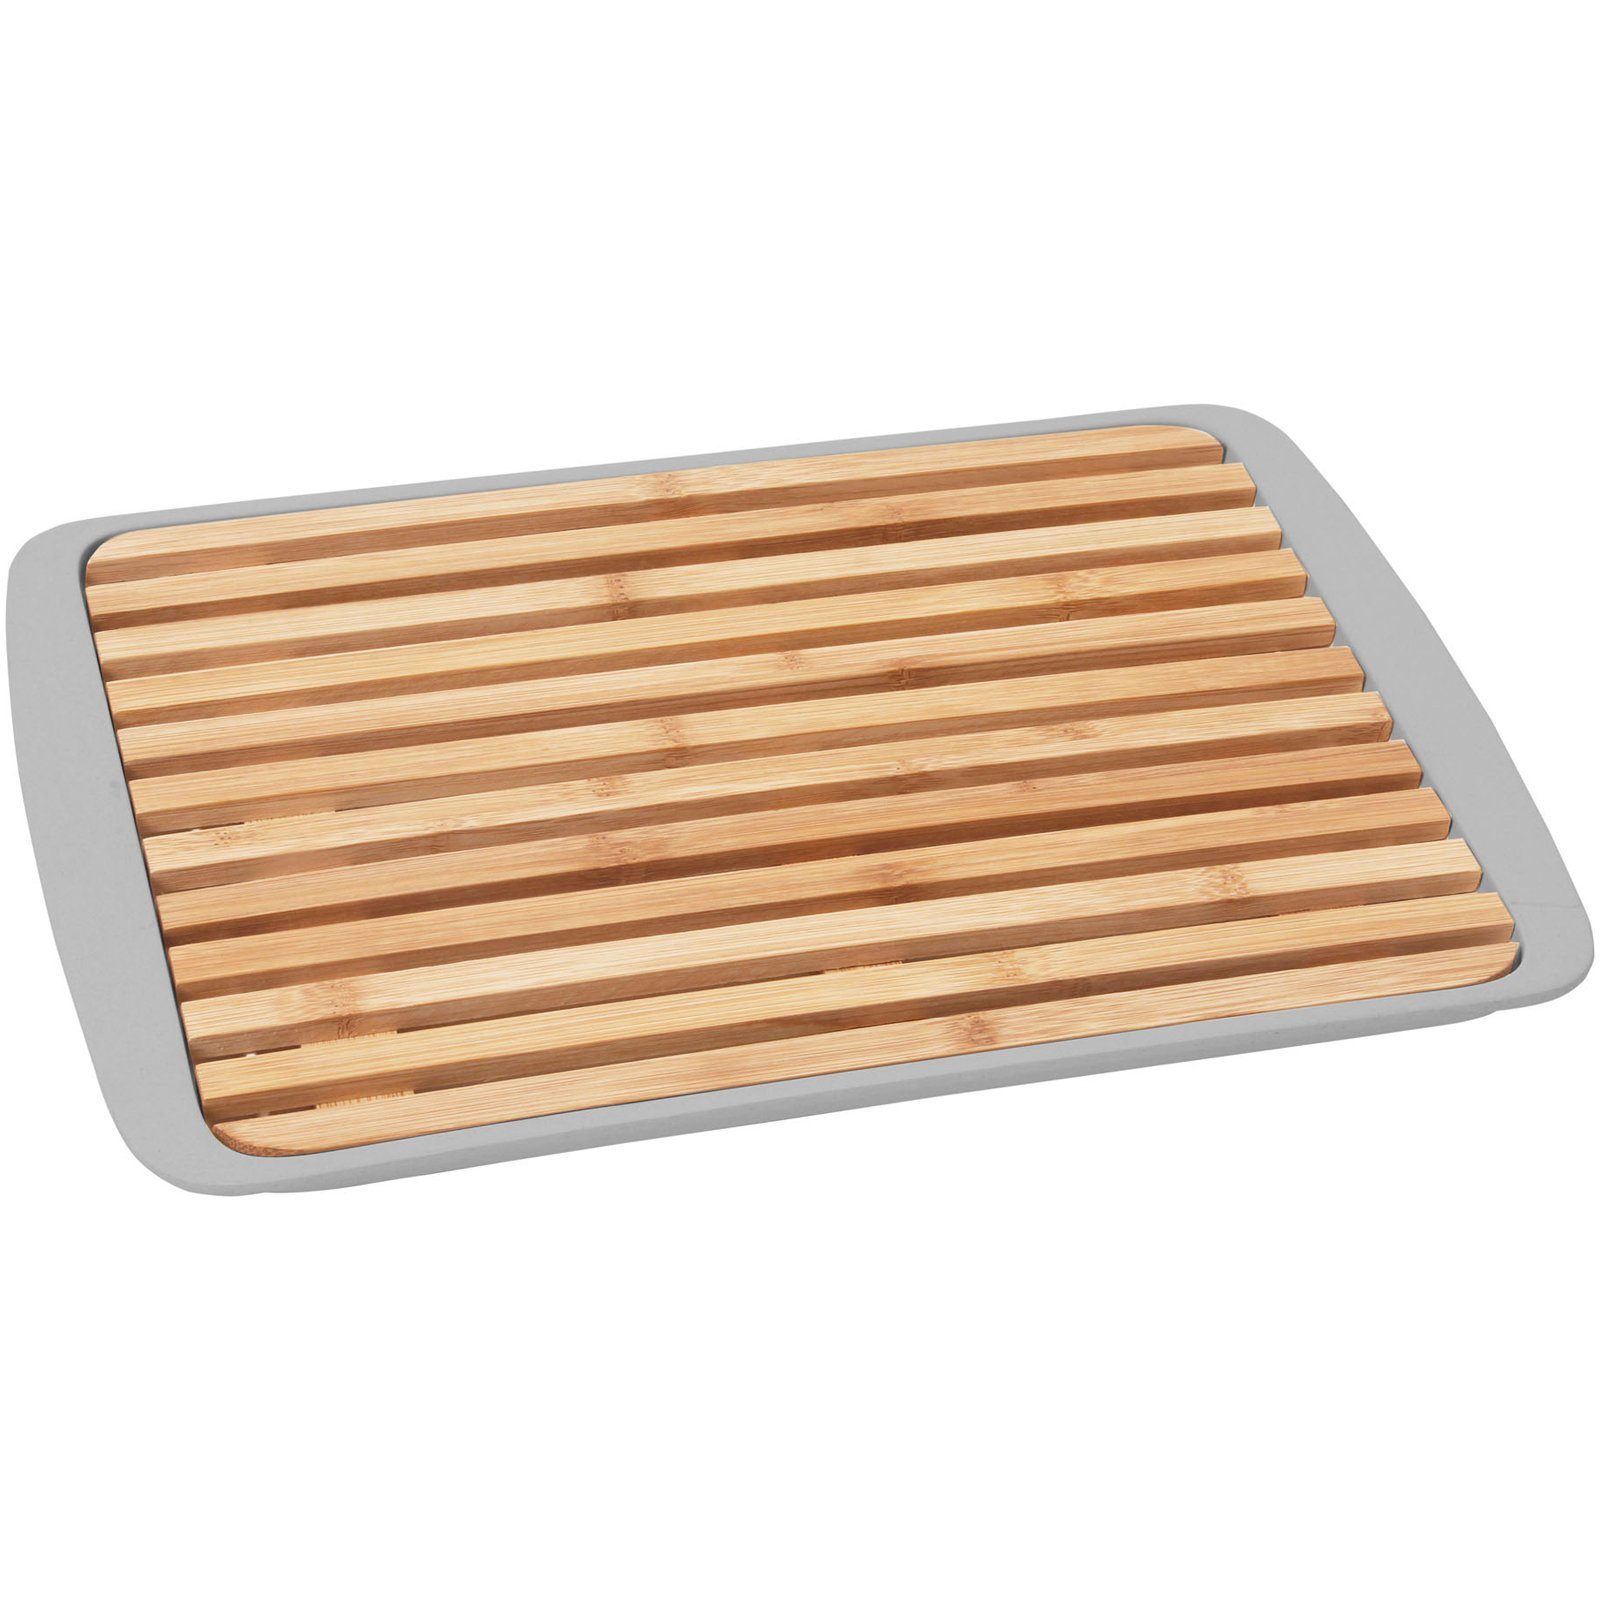 Platte 2-in-1 Küchen BRUNNER & 24x36cm Schneidebrett Tablett Servier, Holz Melamin/Holz, Brett Schneidebrett Grau